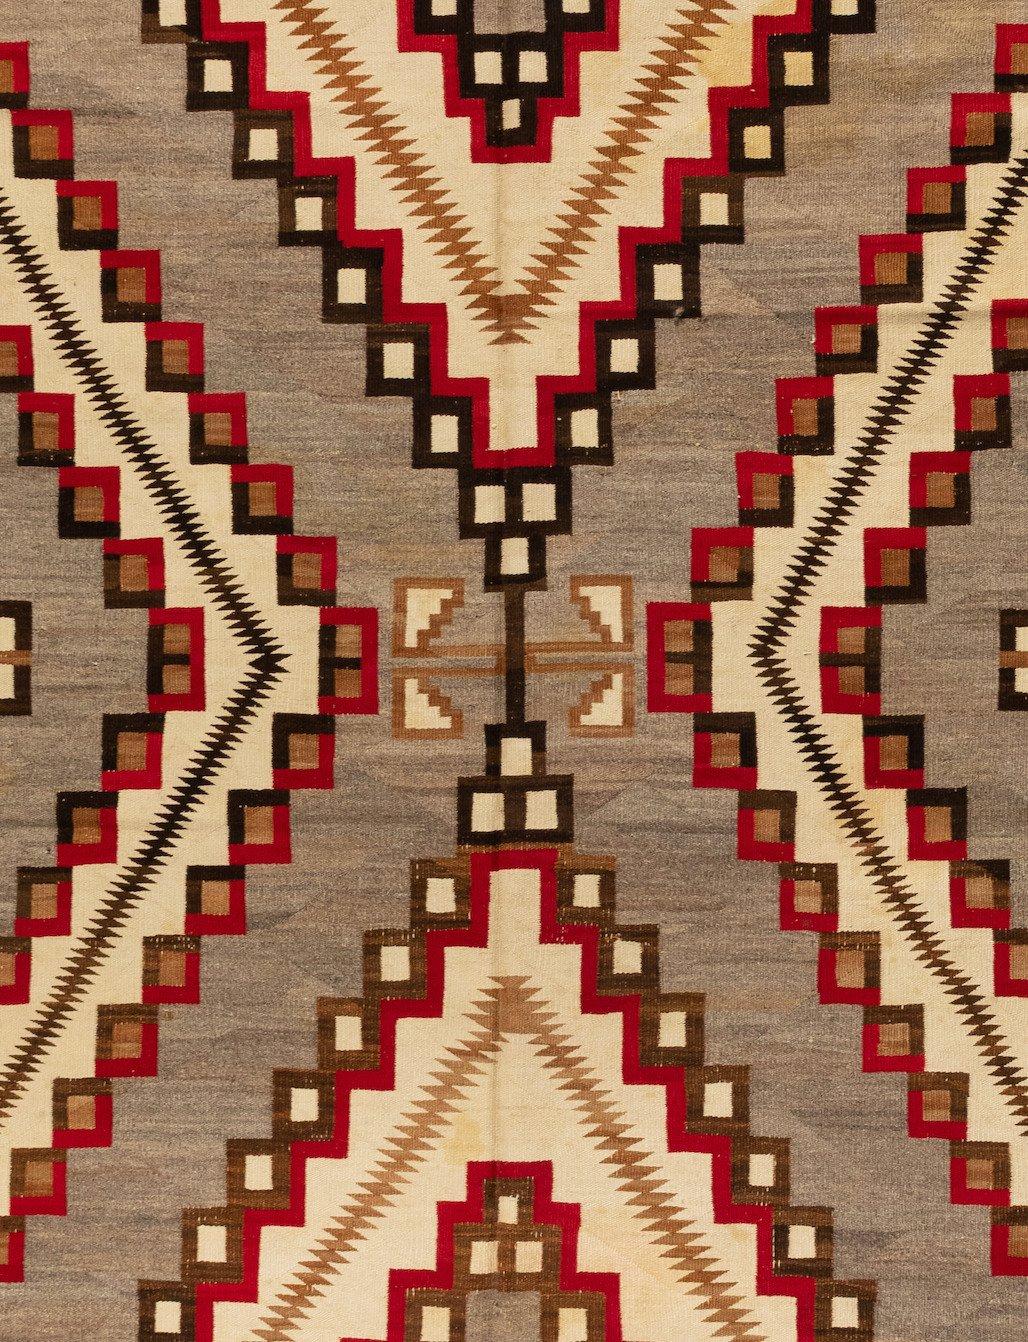 Il s'agit d'un grand, et donc rare, tapis géométrique Navajo d'Amérique du Nord, datant des années 1920-1930, en gris et ivoire, mesurant 1,2 x 3,2 mètres.

Depuis que les Navajos ont commencé à tisser, vers 1700, le tissage a constitué un